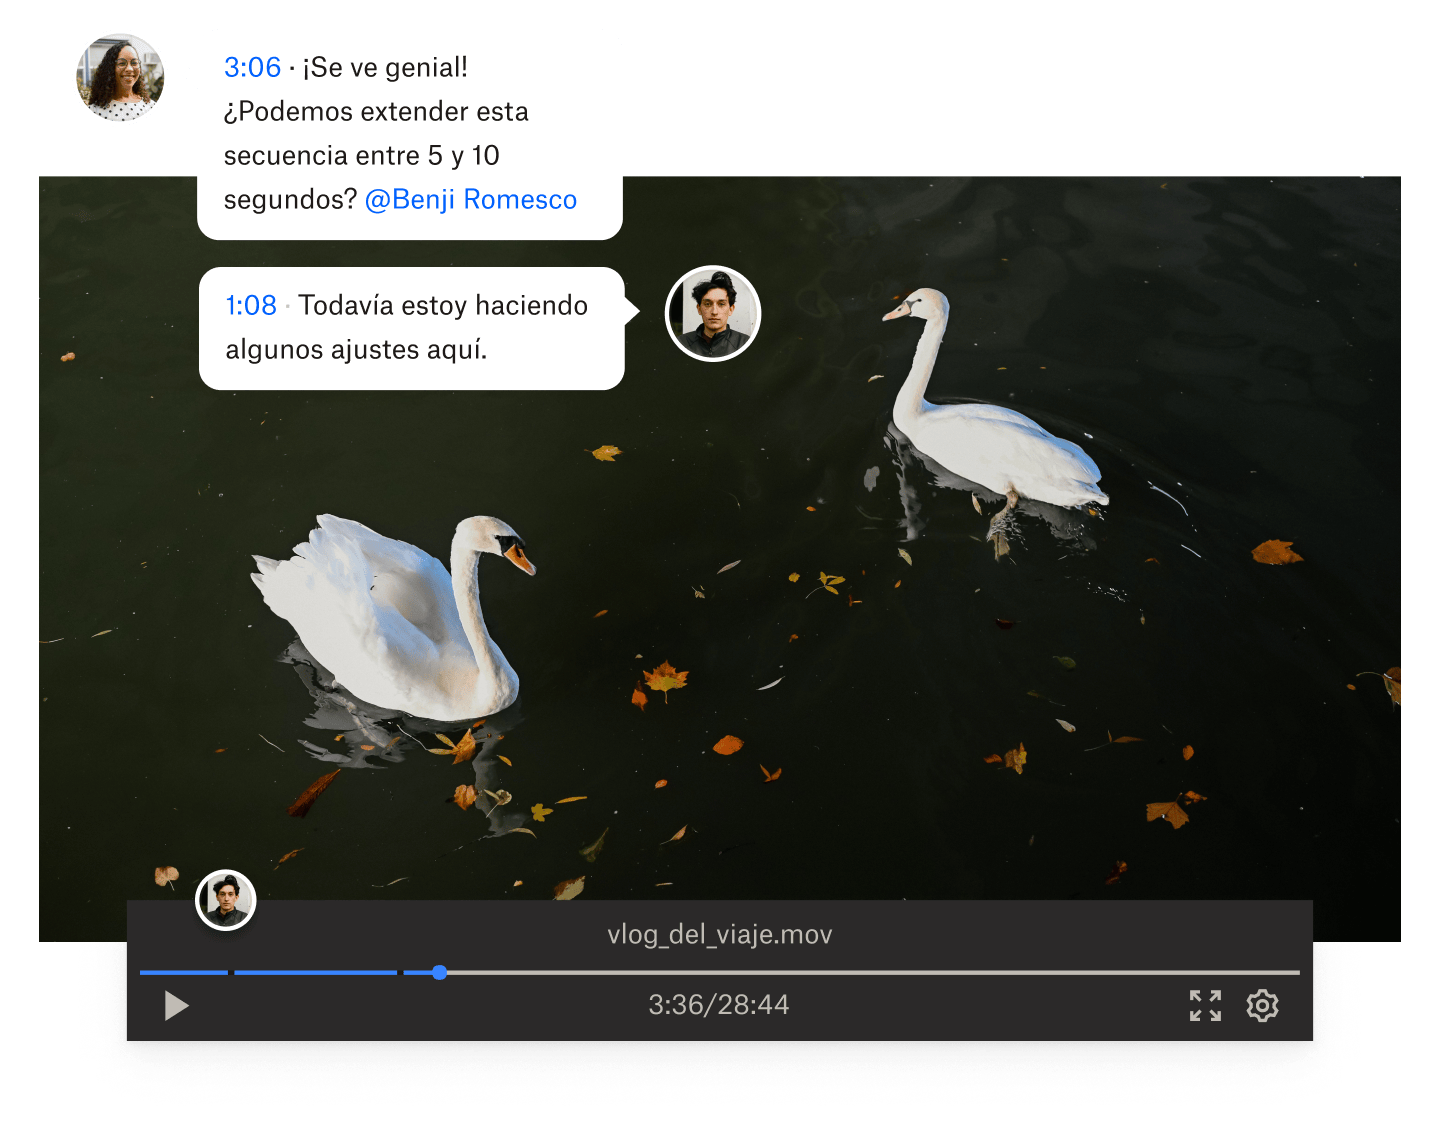 Un fotograma de un video de dos cisnes nadando en el agua con comentarios con marca de tiempo superpuestos en el video